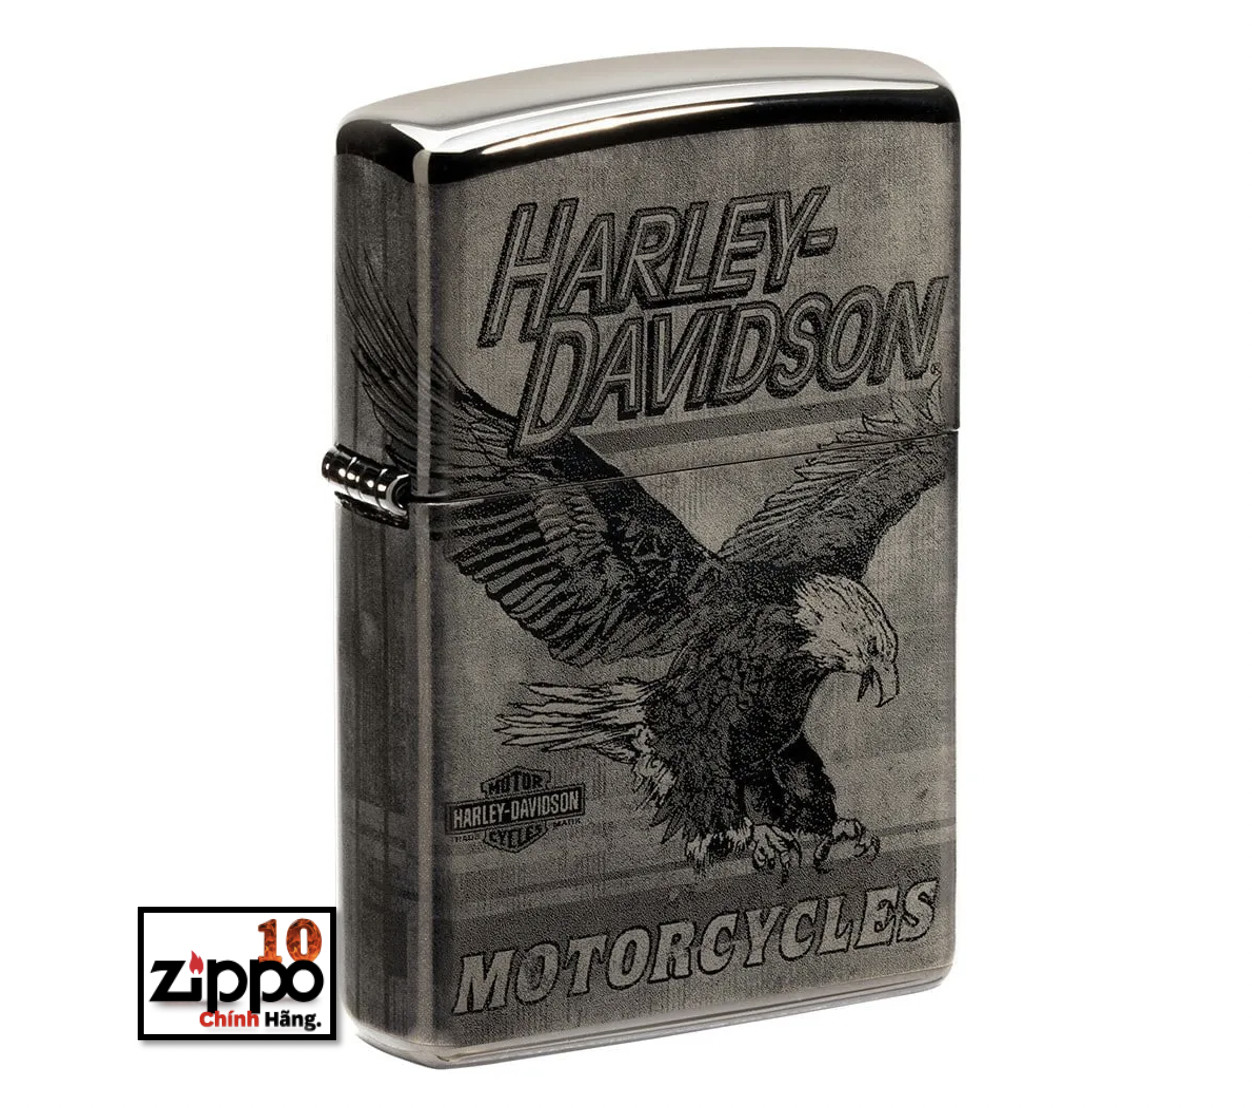 Bật lửa Zippo Harley-Davidson Eagle Photo Image 360° High Polish Black sku: 48360 - Chính hãng 100%